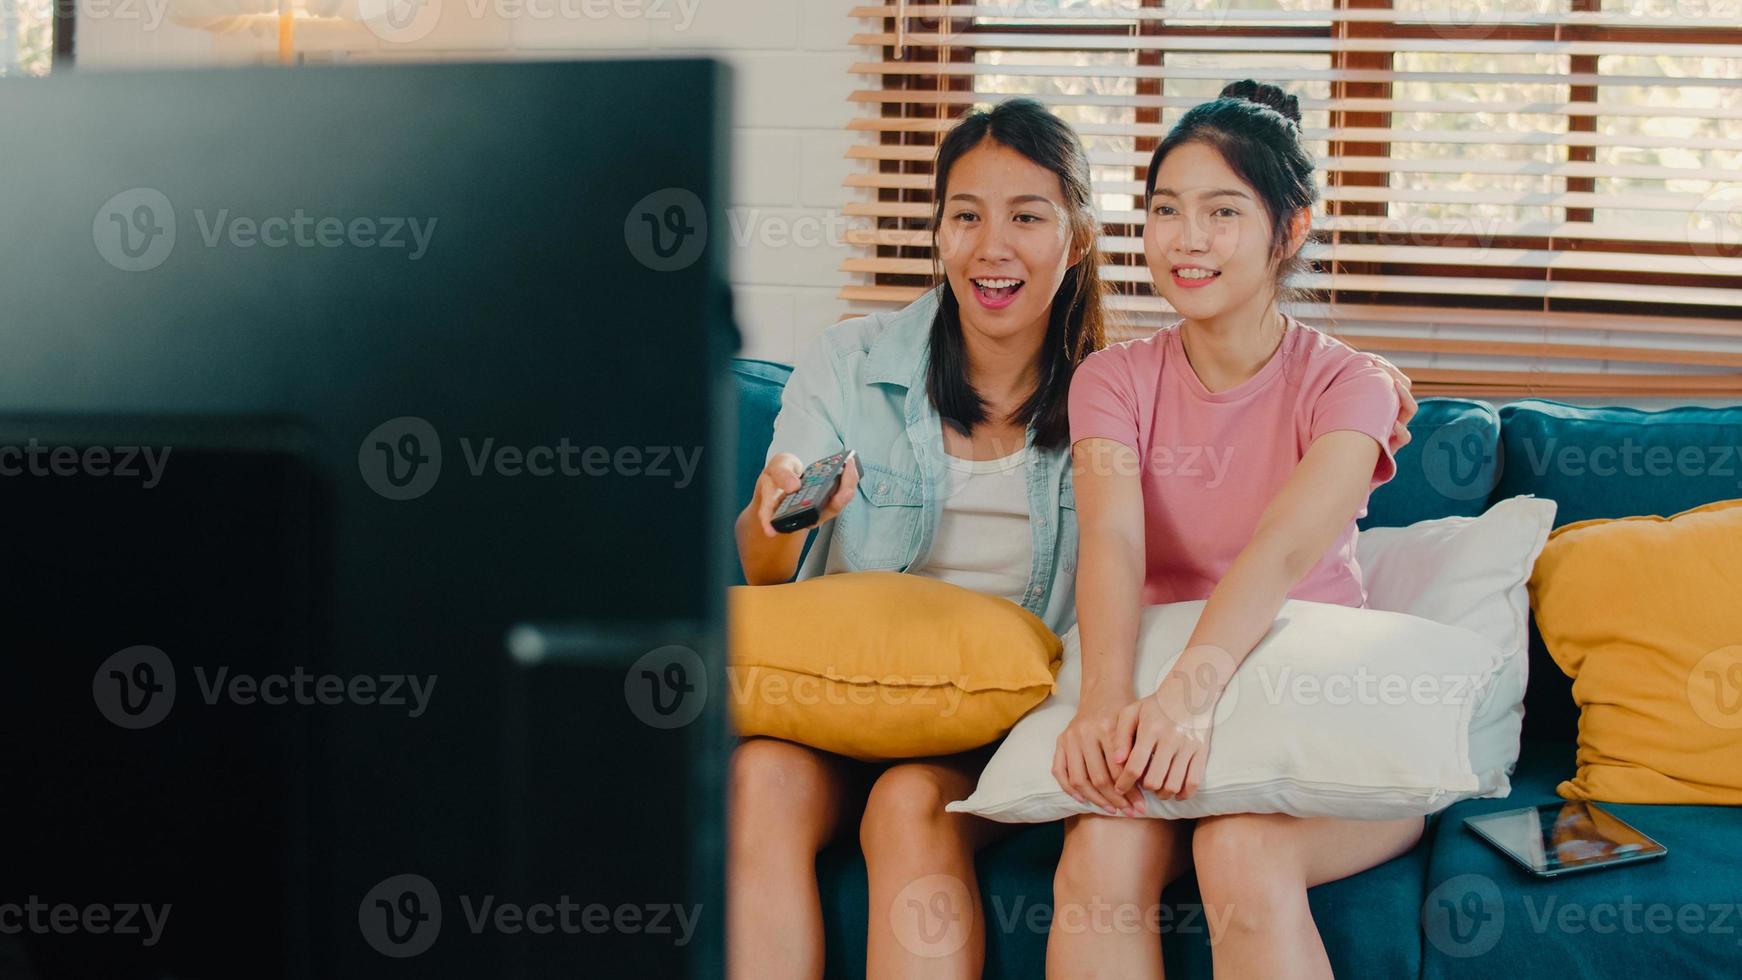 jóvenes asia lesbianas lgbtq mujeres pareja viendo televisión en casa, amante asiática mujer sintiéndose feliz diversión reír mirando series de televisión juntos mientras están acostados en el sofá en la sala de estar en el concepto de hogar. foto